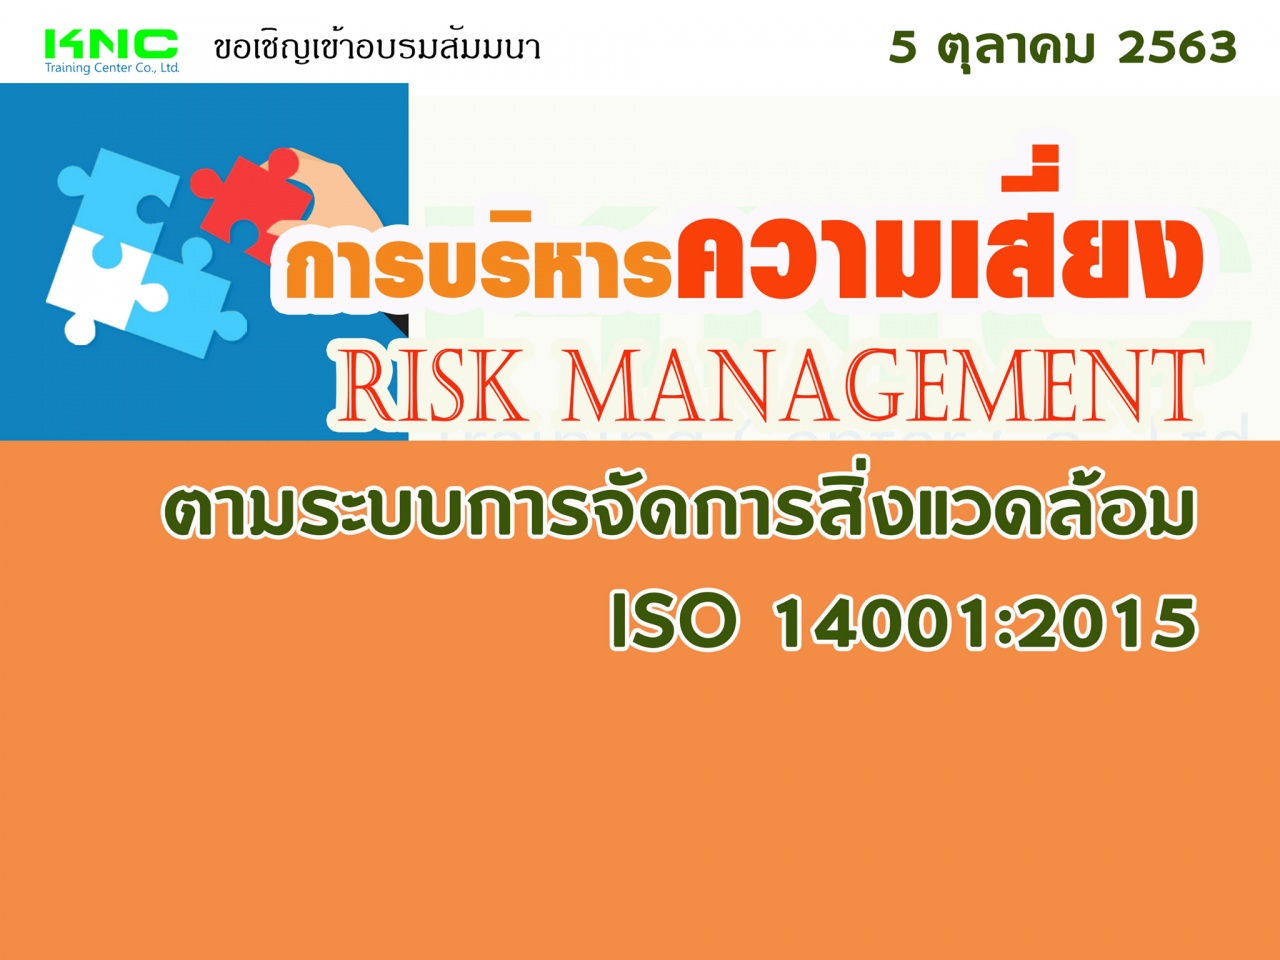 การบริหารความเสี่ยง : Risk Management ตามระบบการจัดการสิ่งแวดล้อม ISO 14001:2015